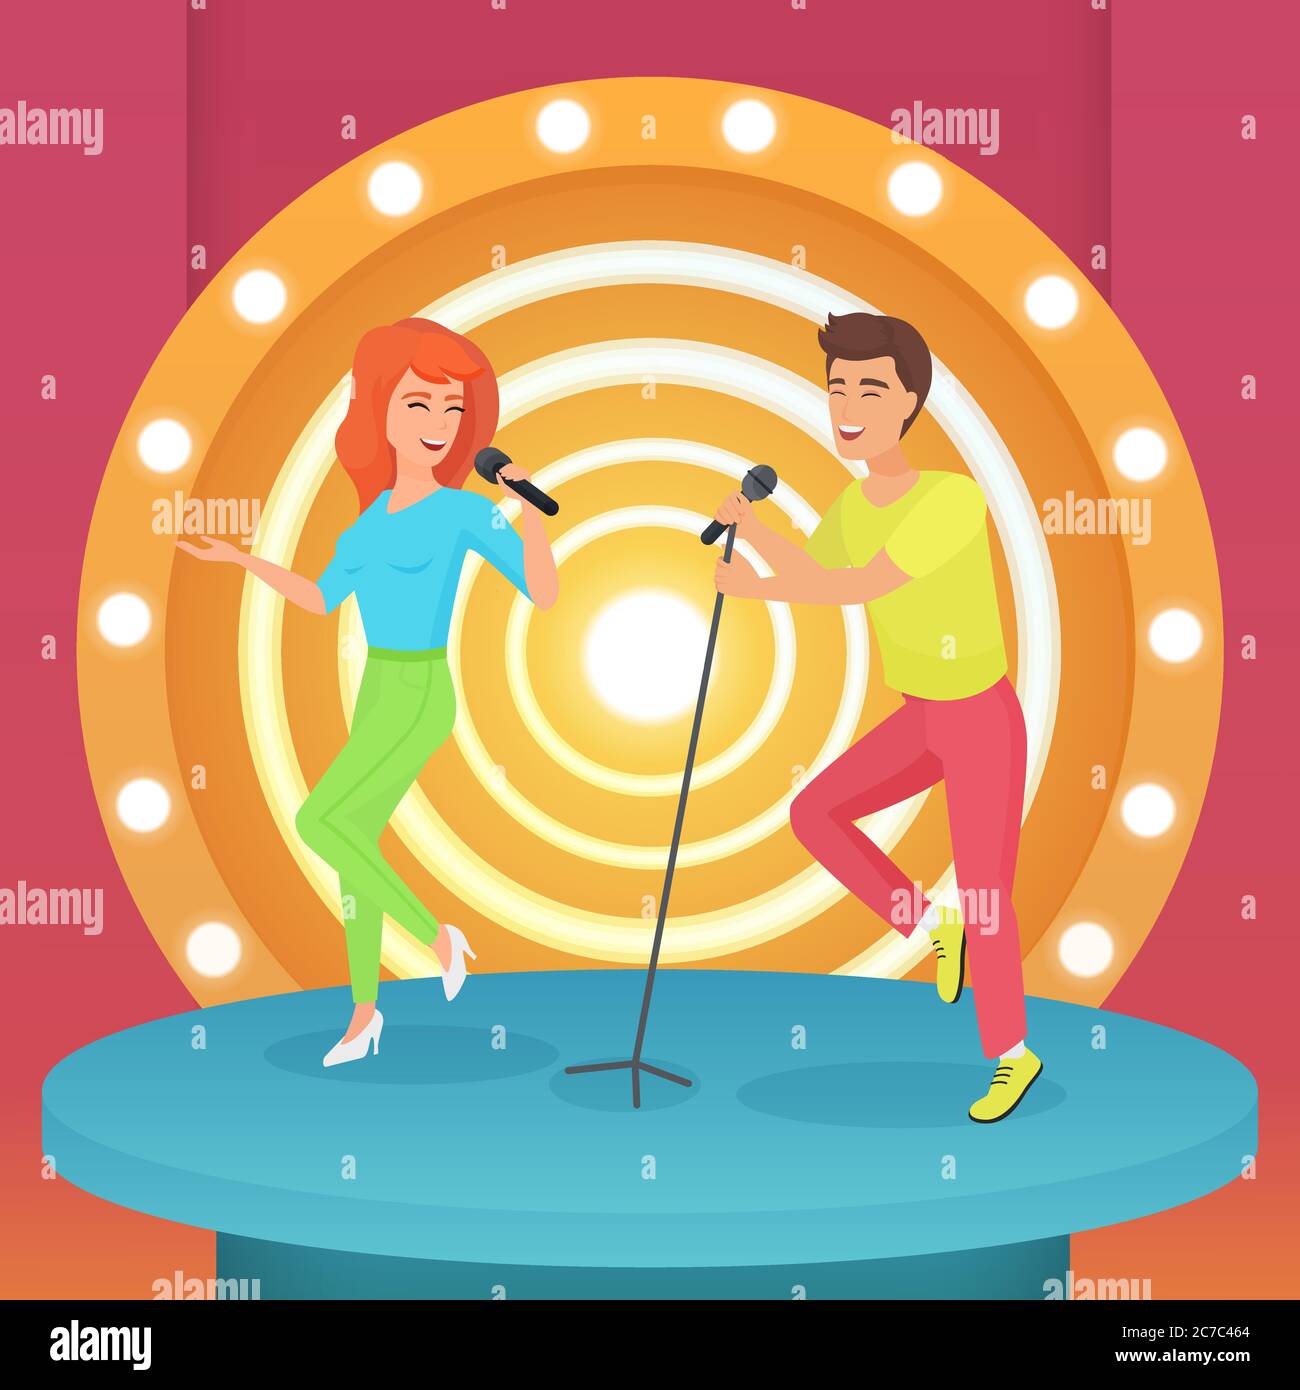 Couple, homme et femme chantant une chanson karaoké avec microphone debout  sur la scène moderne de cercle avec des lampes illustration vectorielle  Image Vectorielle Stock - Alamy